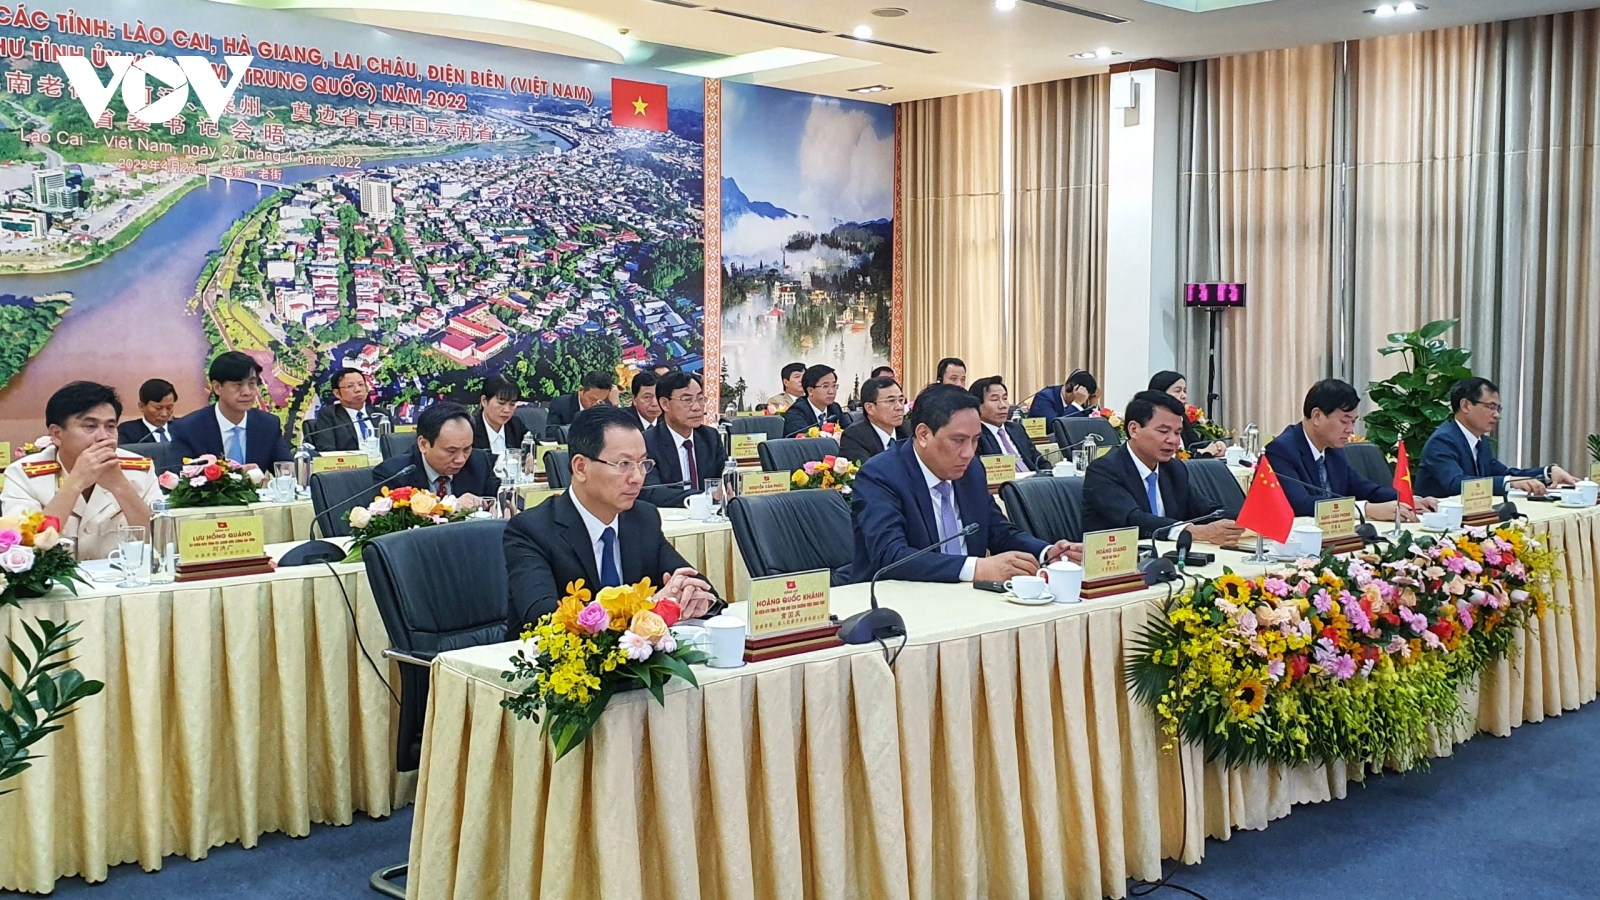 4 tỉnh biên giới phía Bắc và tỉnh Vân Nam (Trung Quốc) bàn về hợp tác, phát triển